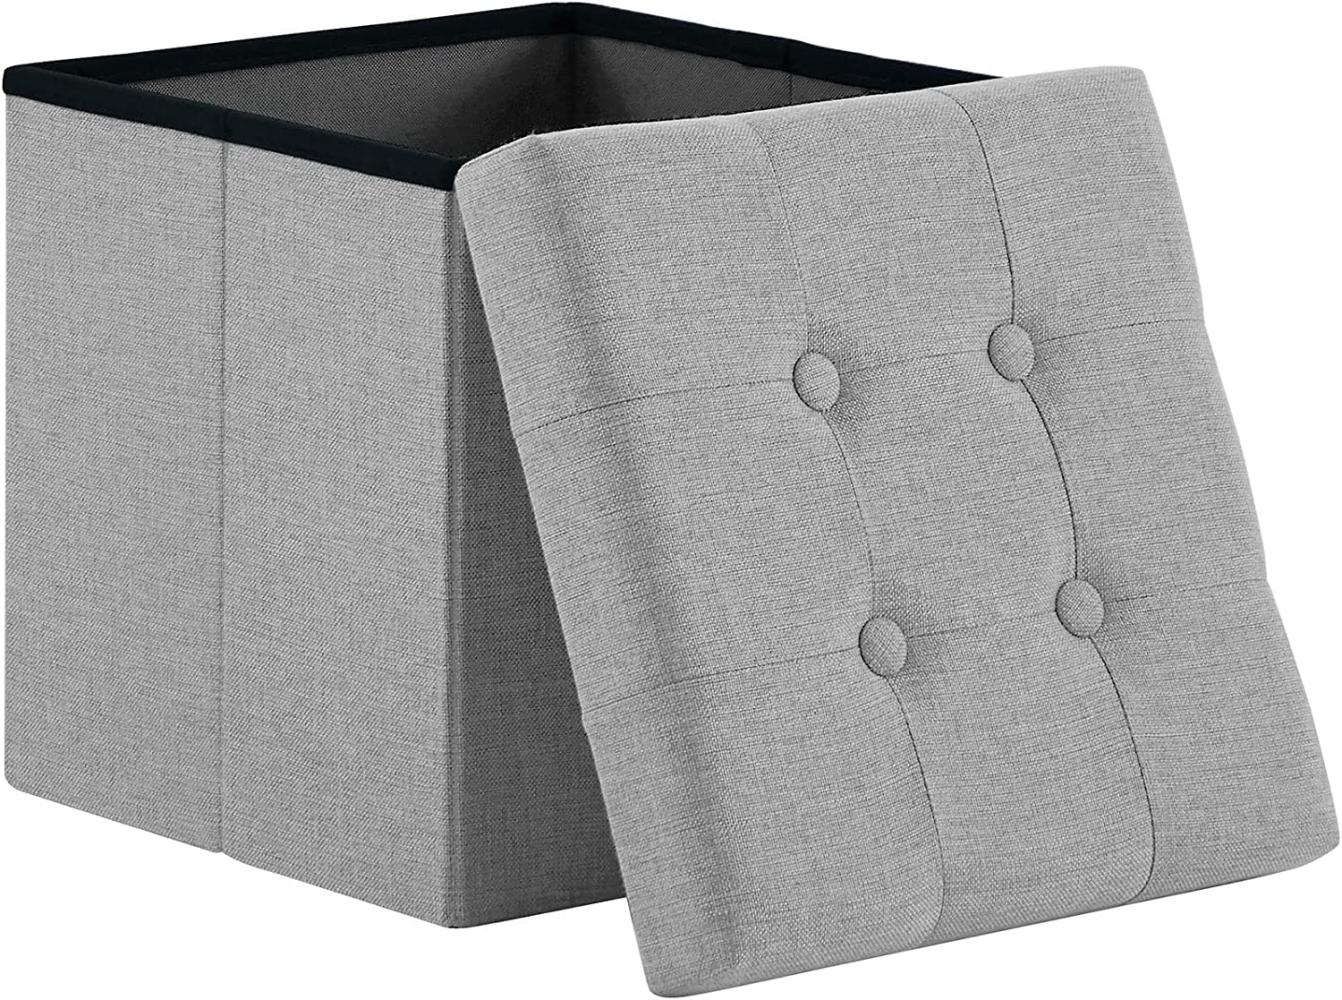 Zedelmaier Sitzhocker mit Stauraum, Fußbank Truhen Aufbewahrungsbox faltbar belastbar bis 300 kg, Leinen, 38 x 38 x 38 cm (Hellgrau) Bild 1